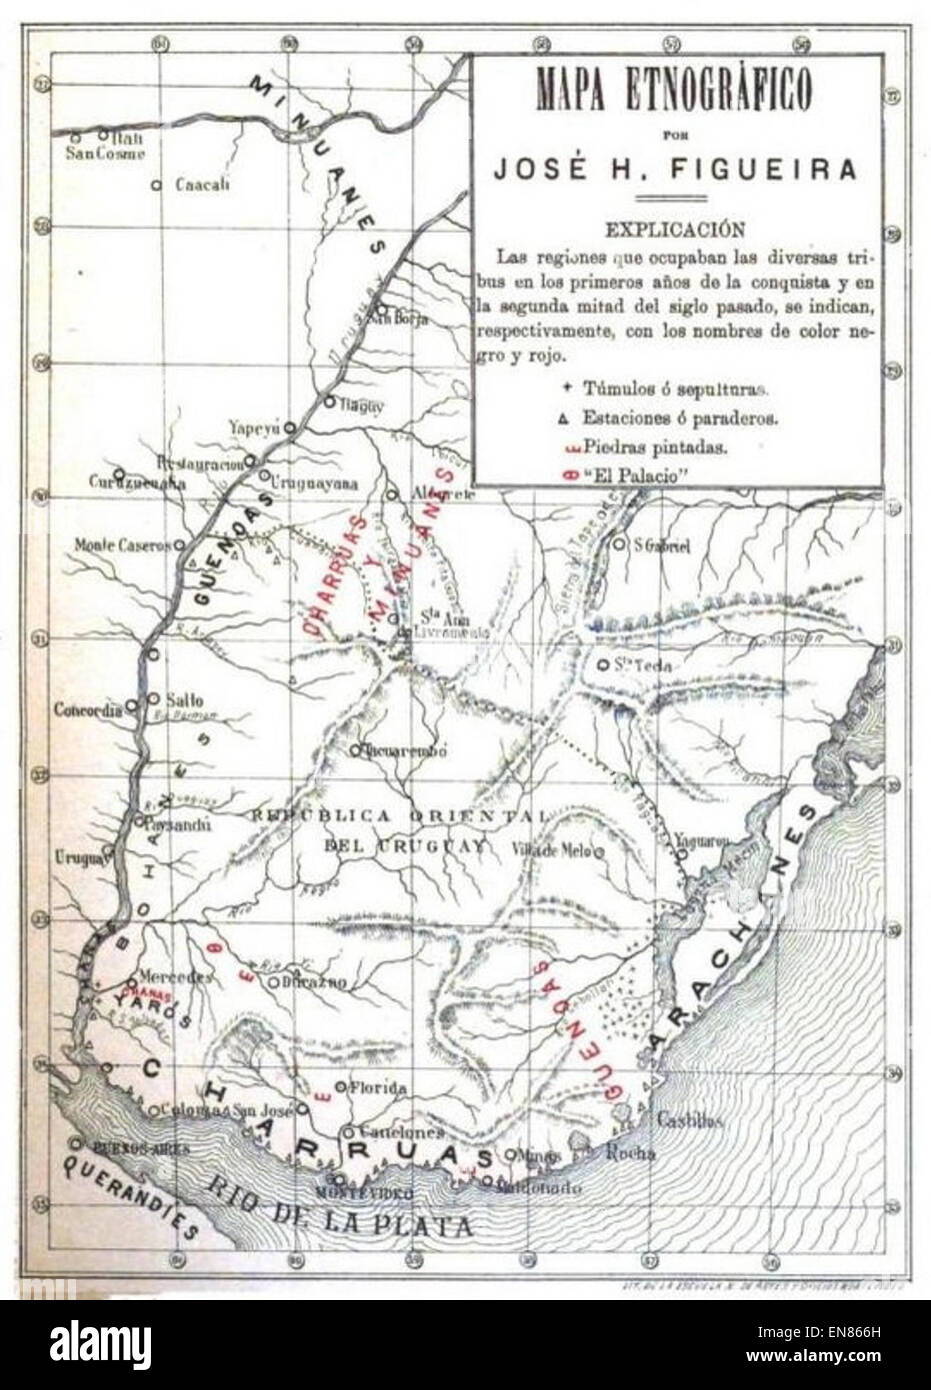 FIGUEIRA(1892) Mapa etnografC3ADco de la Republica Oriental del Uruguay Stock Photo